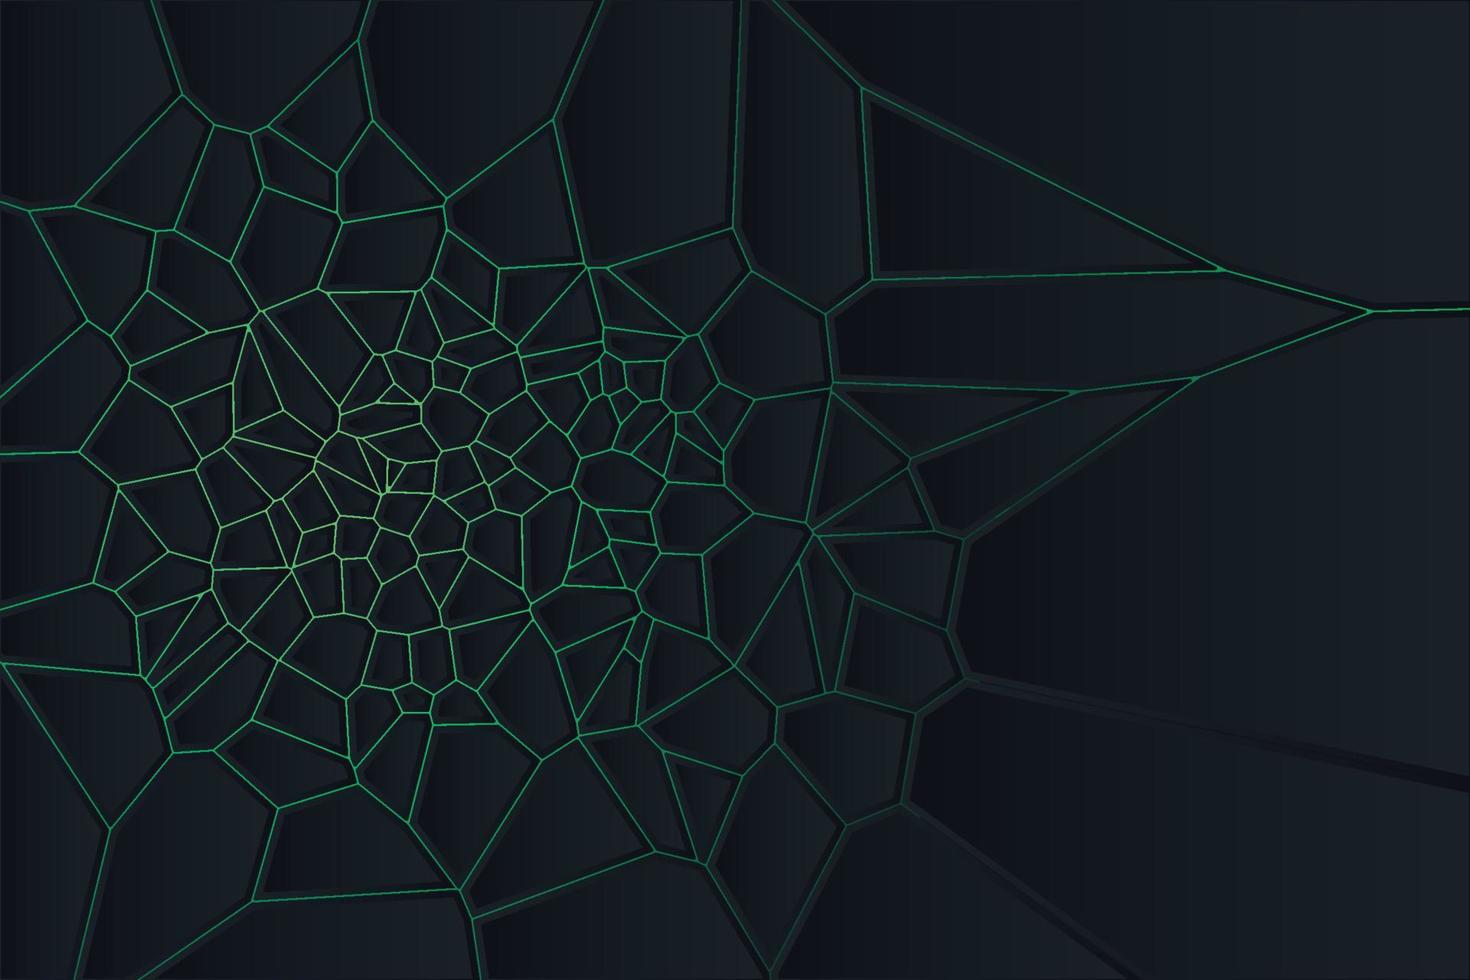 abstrakt svart geometrisk voronoi diagram överlappar lager på mörk bakgrund med gradient bakgrundsbelysning. modern teknisk futuristisk design för omslagsmall, affisch, bannerwebb, flygblad och presentation vektor